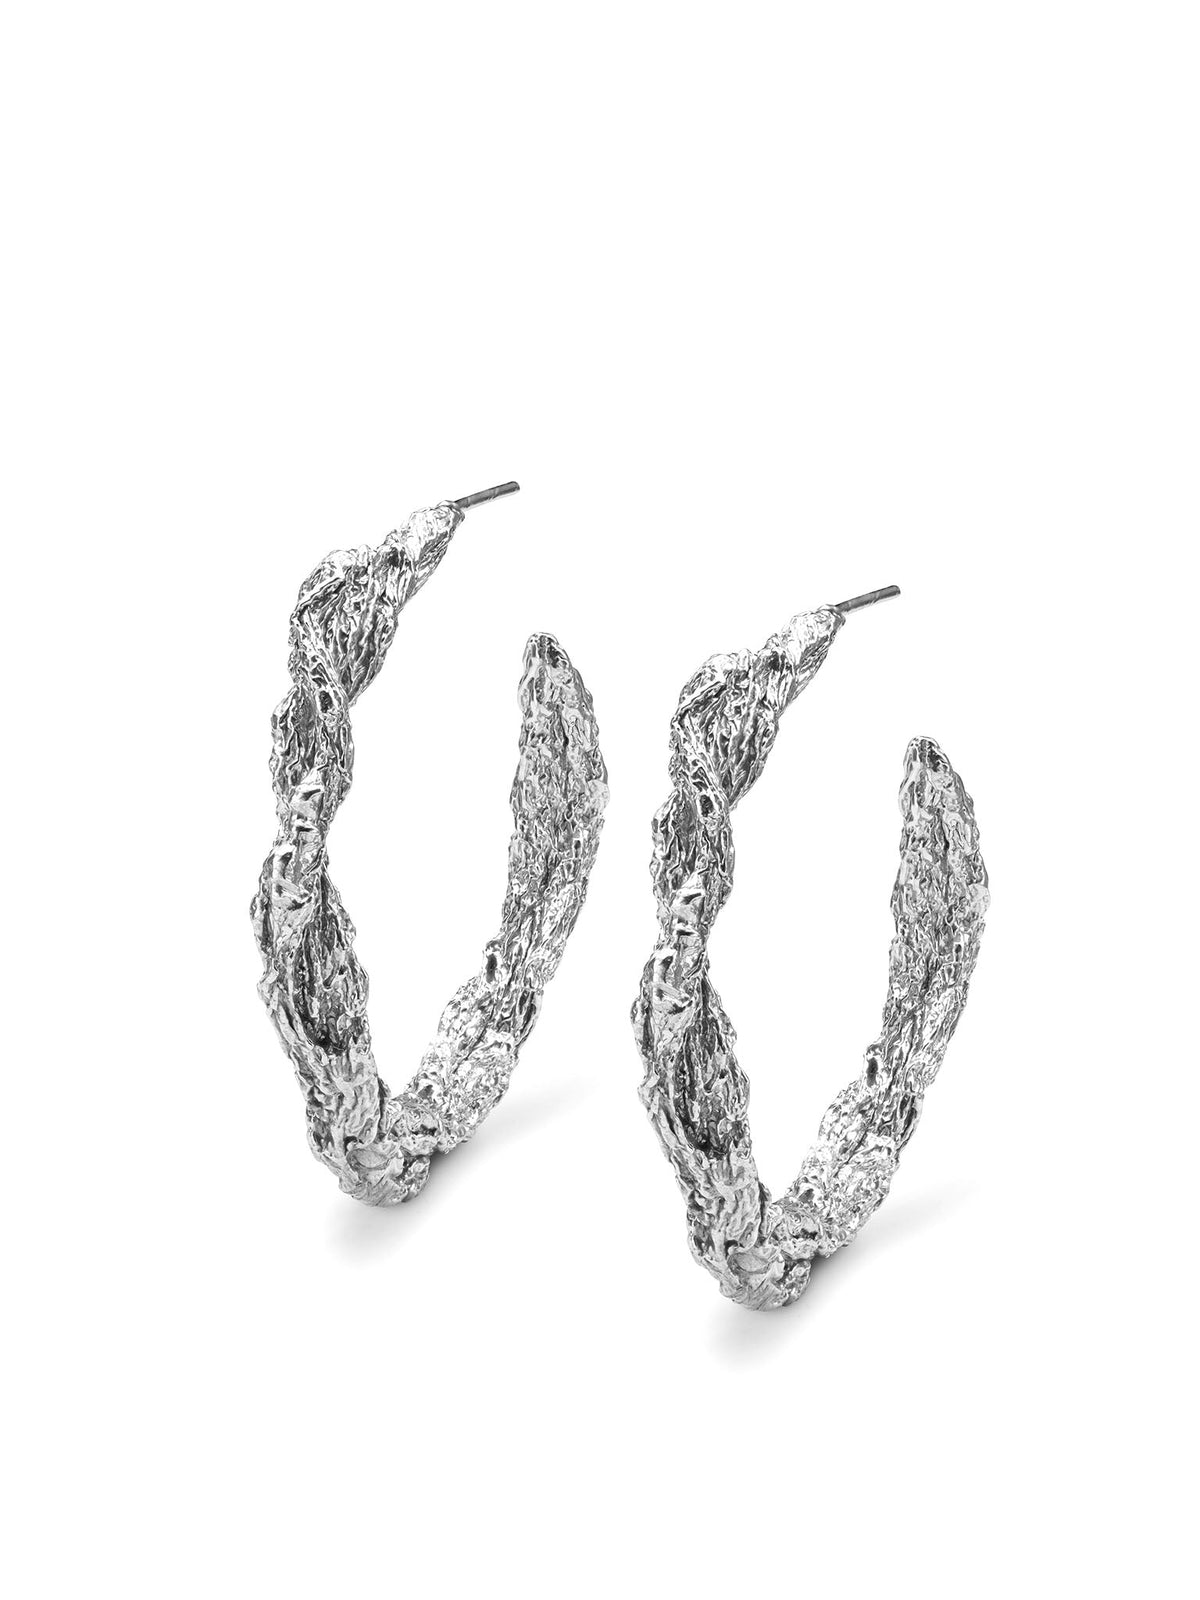 Archaic Hoop Earrings Silver